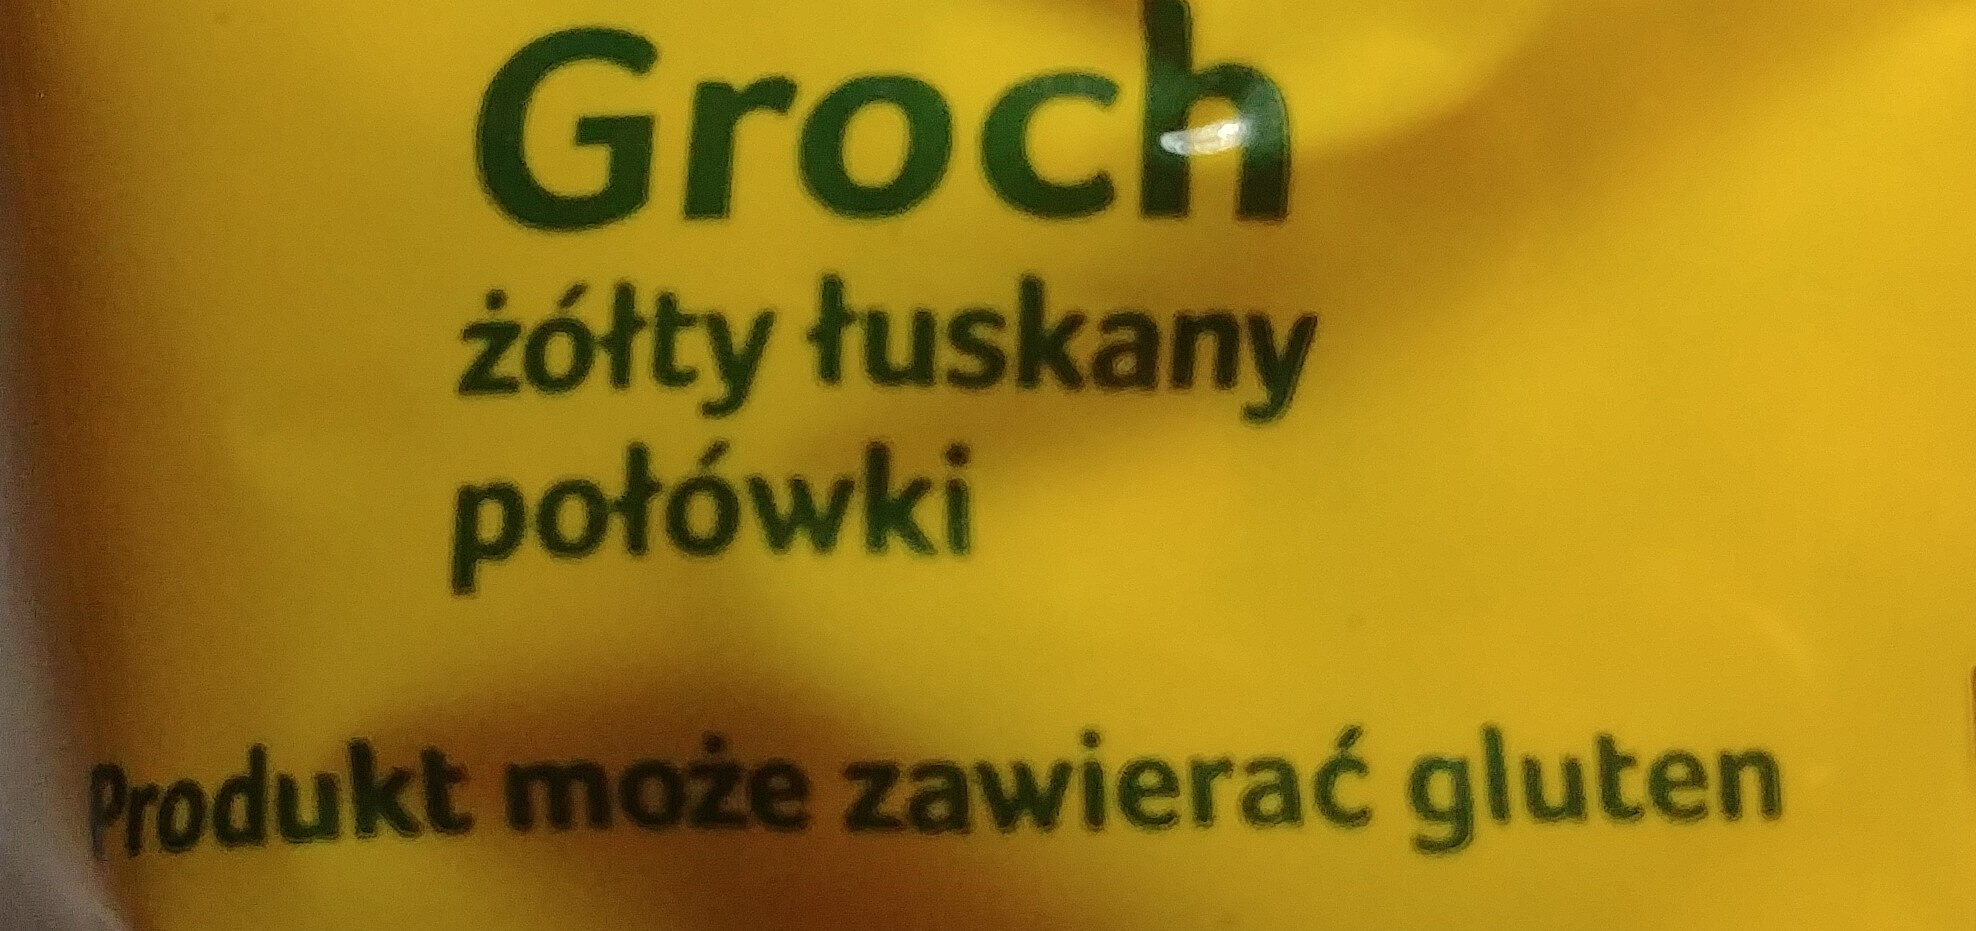 Groch żółty łuskany połówki - Ingredients - pl